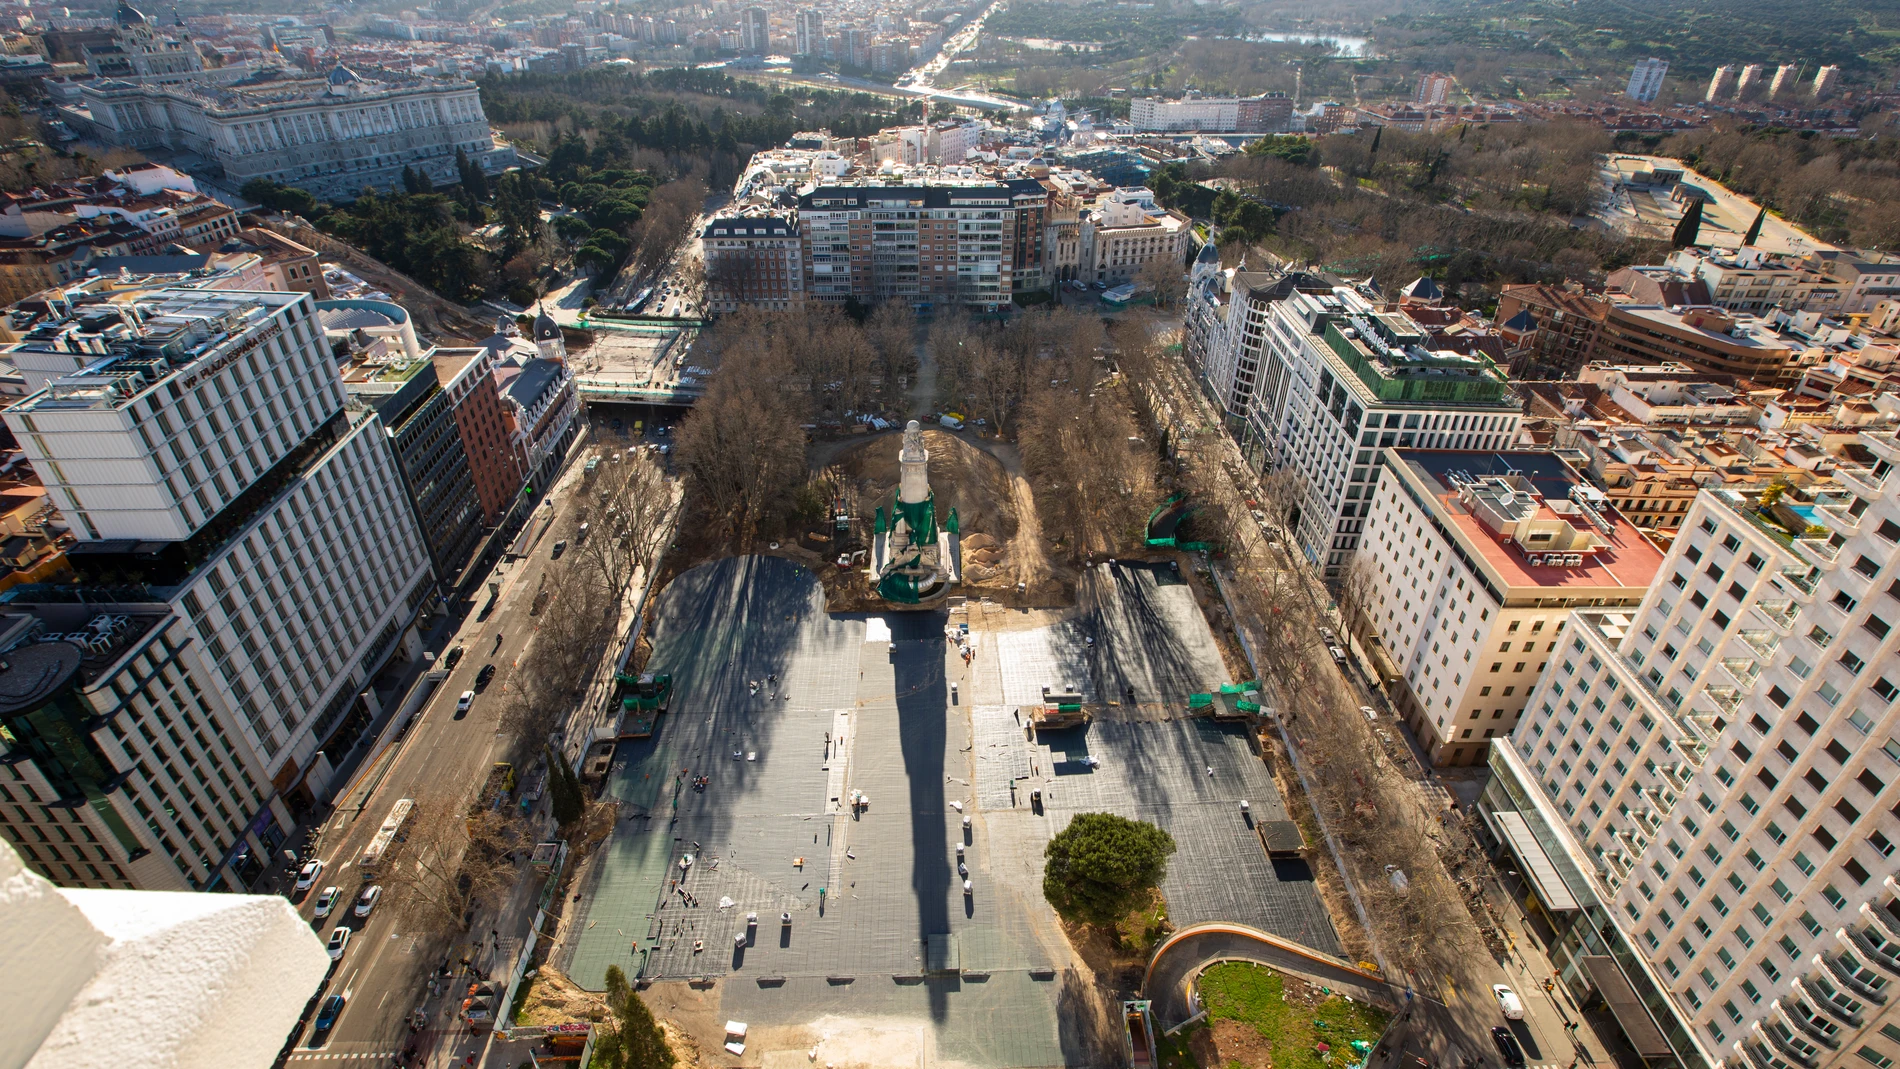 Imagen de la reforma de Plaza de España desde el Hotel Riu.© Jesus G. Feria.05-02-2020.